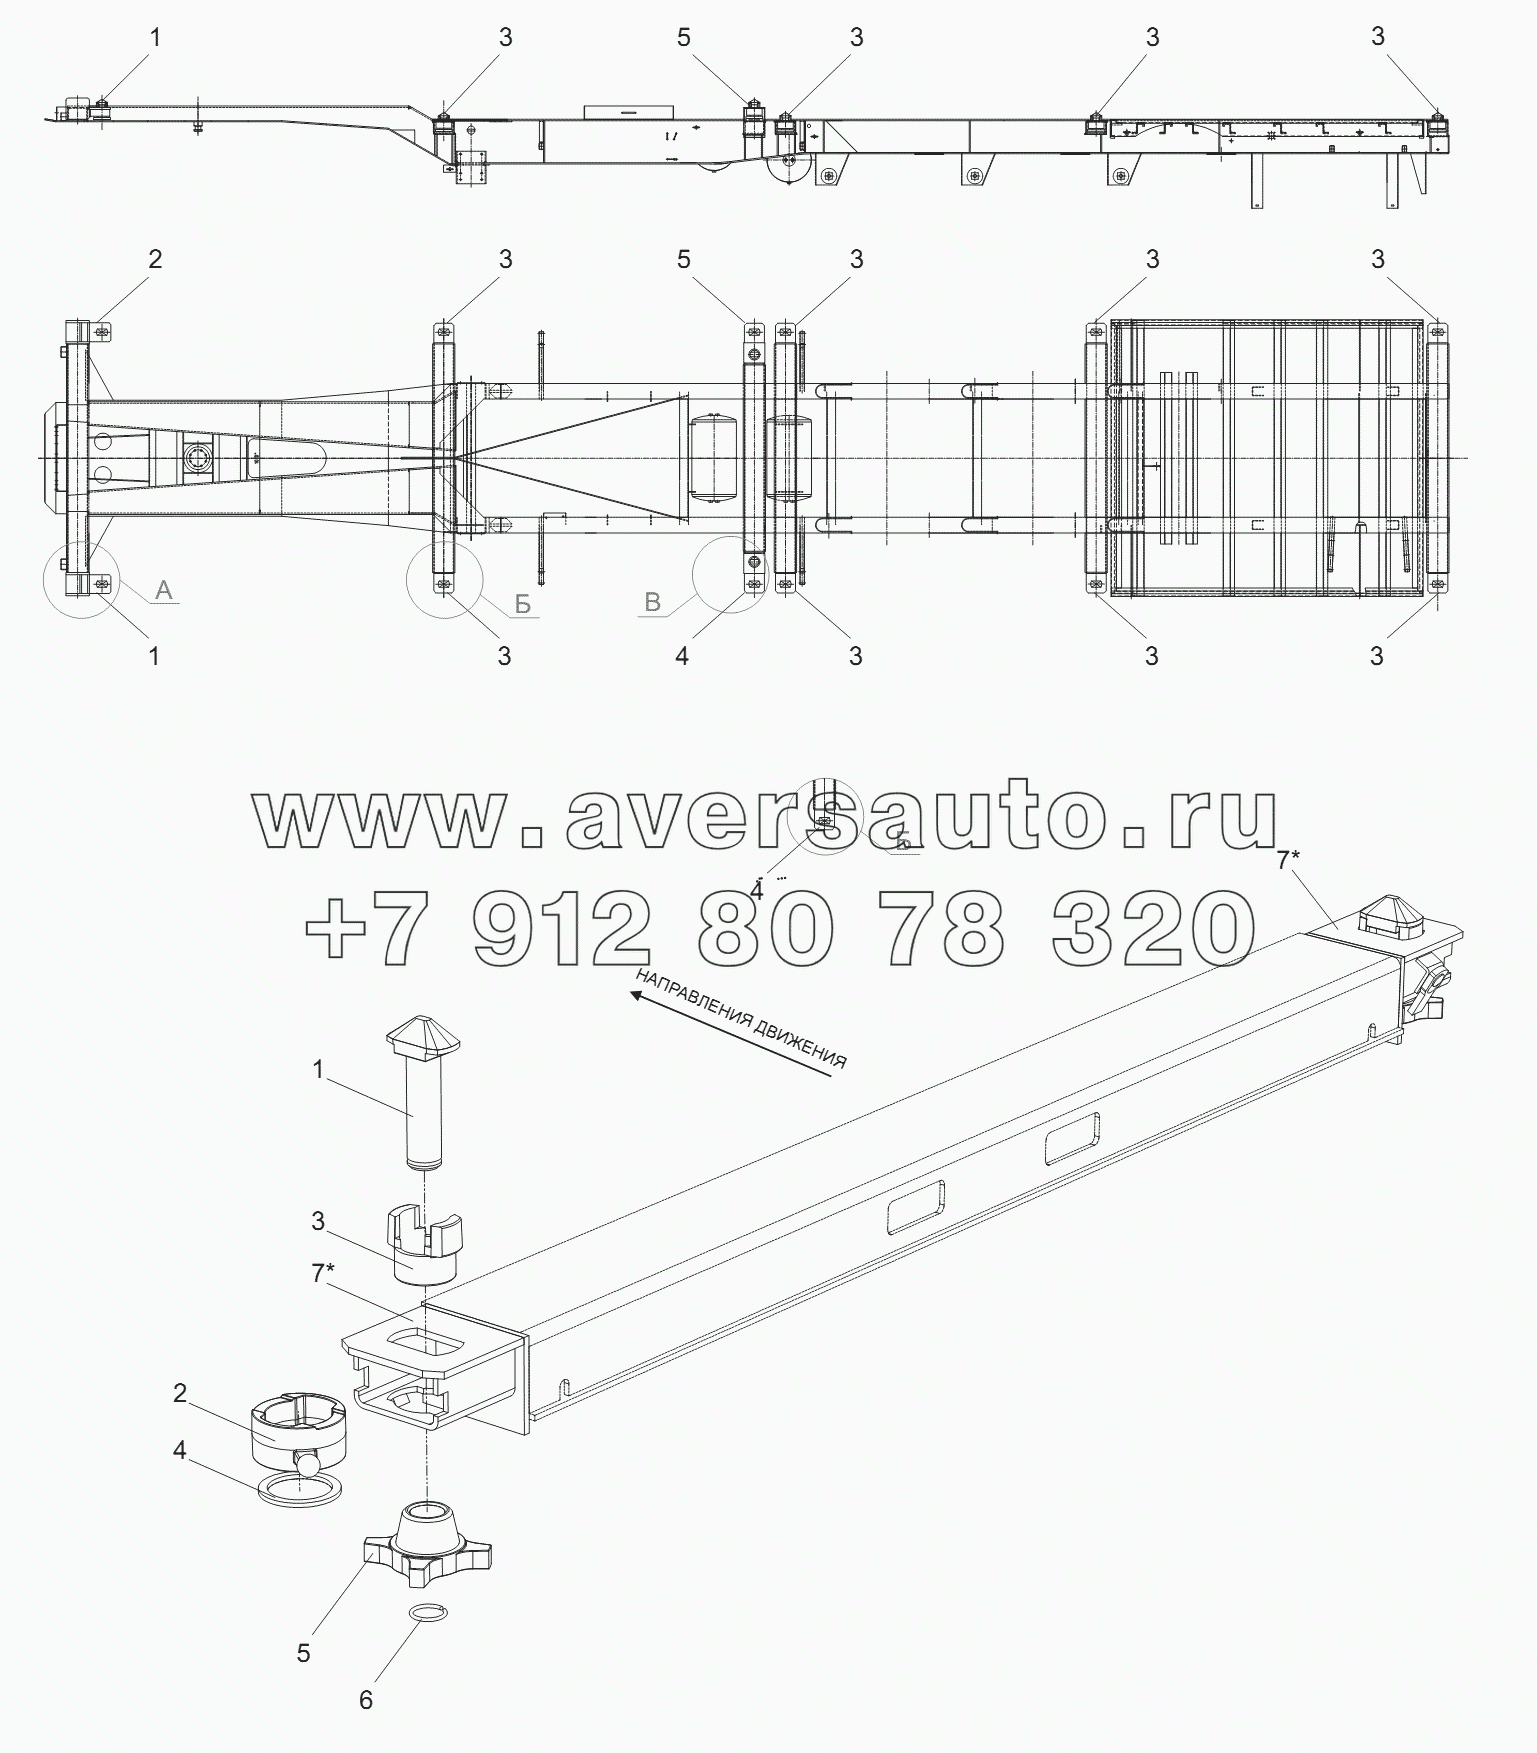 Установка деталей стопоров контейнера на модель 974623-0000020, вид Б